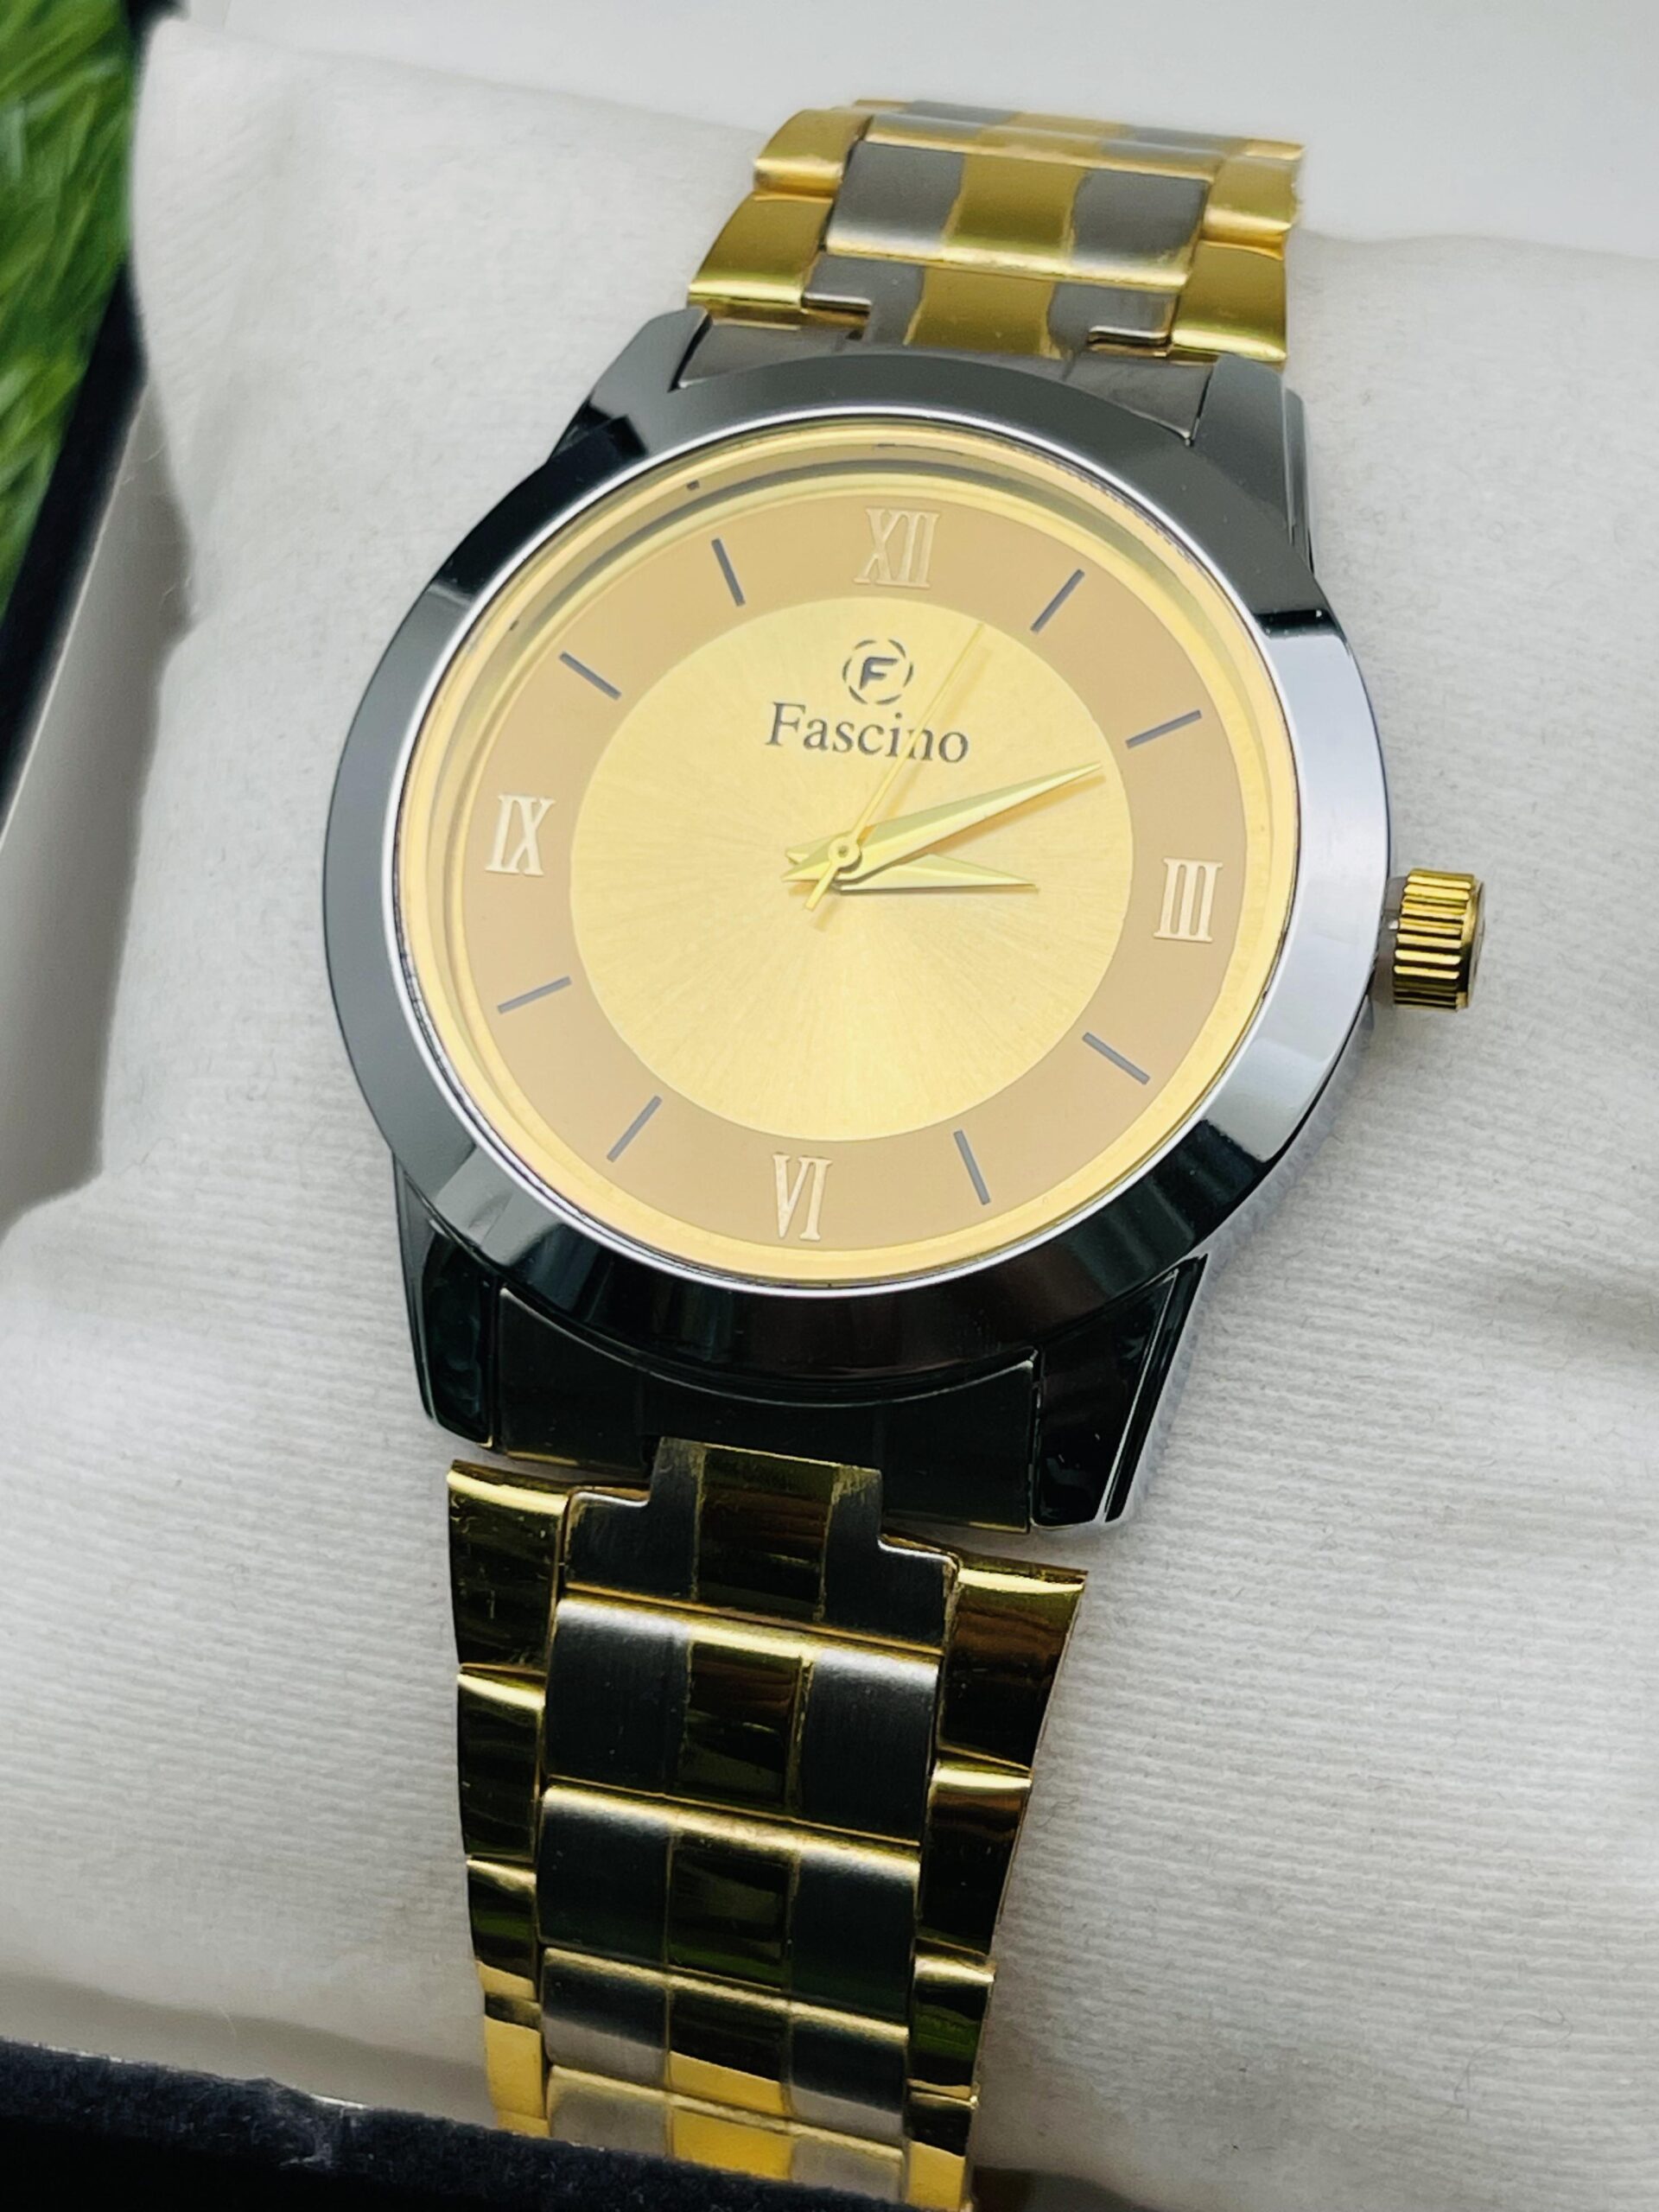 Buy Vavlo Slim Fascino Watch for Gentlemen Online at Best Prices in India -  JioMart.